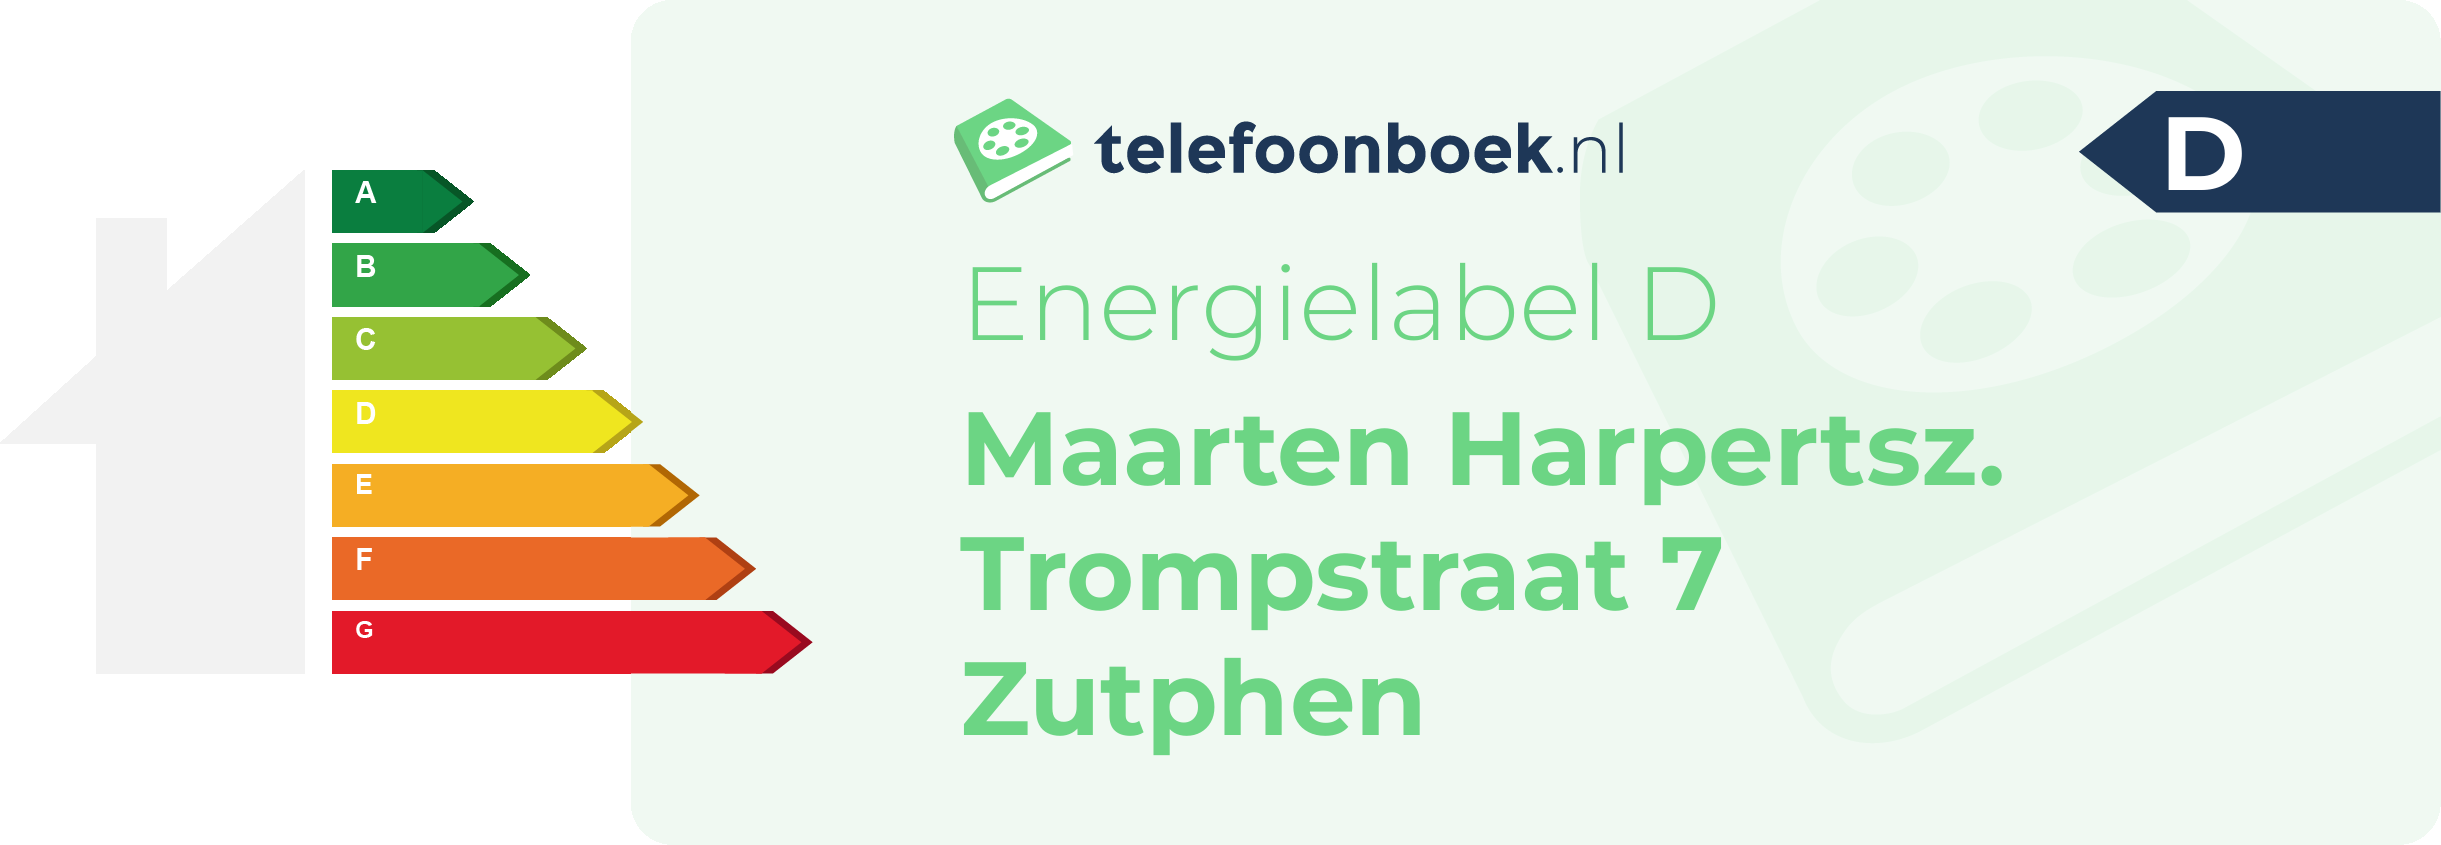 Energielabel Maarten Harpertsz. Trompstraat 7 Zutphen